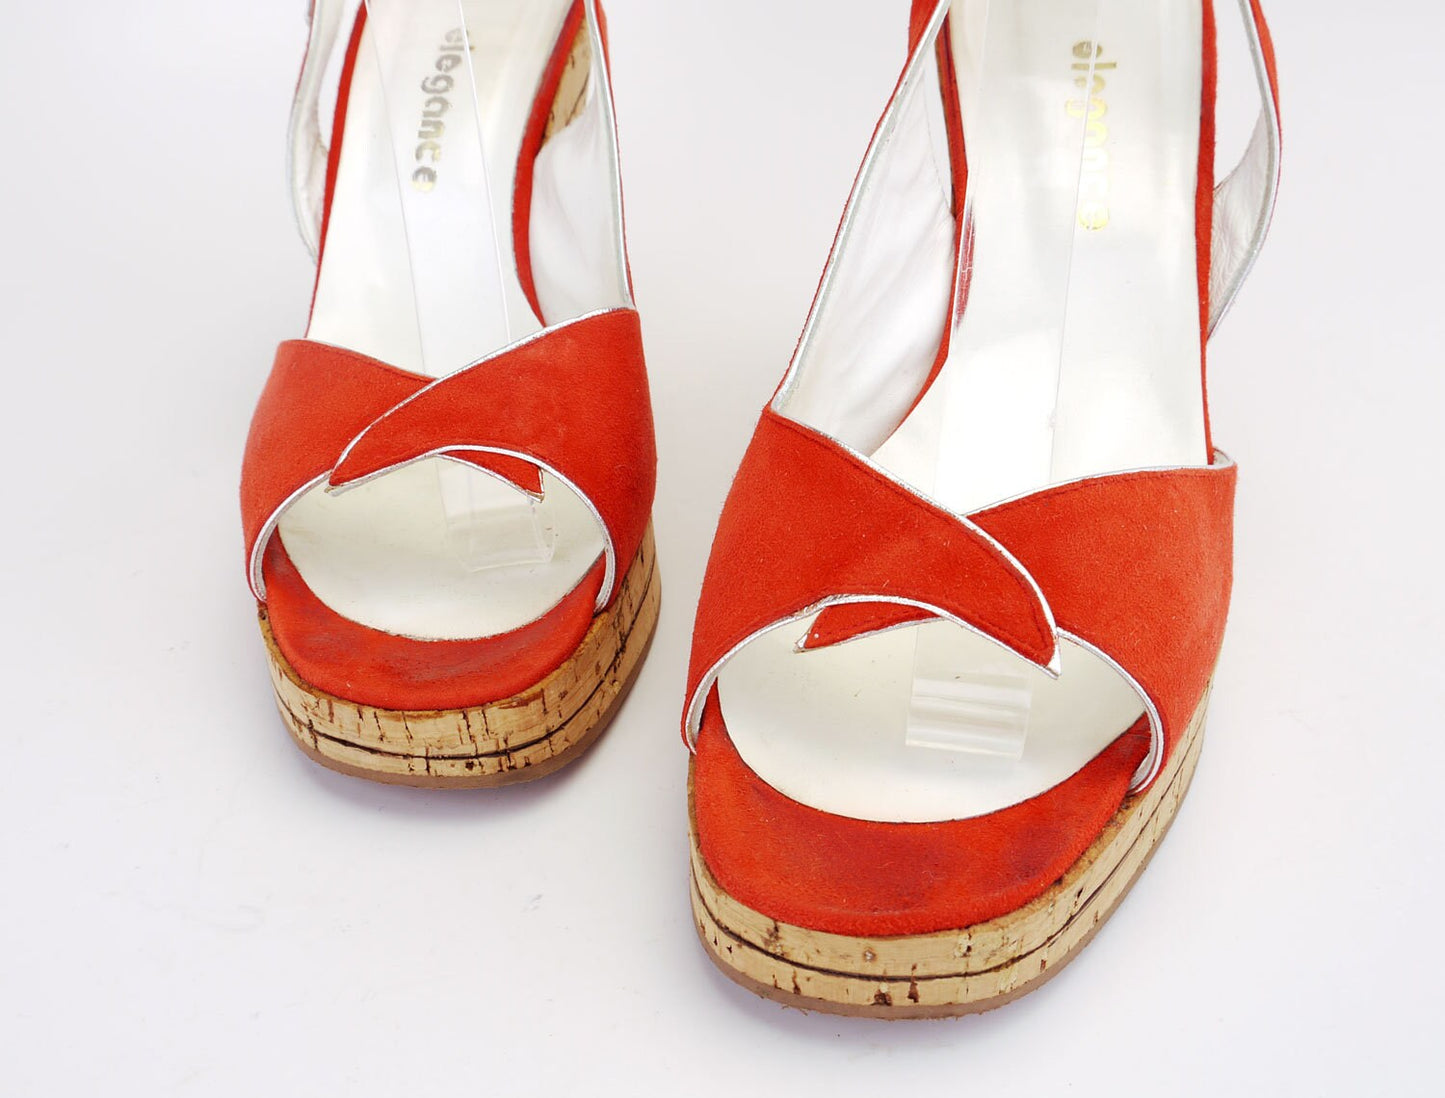 90s Does 70s Cork Platform Sandals by Elegance UK 7